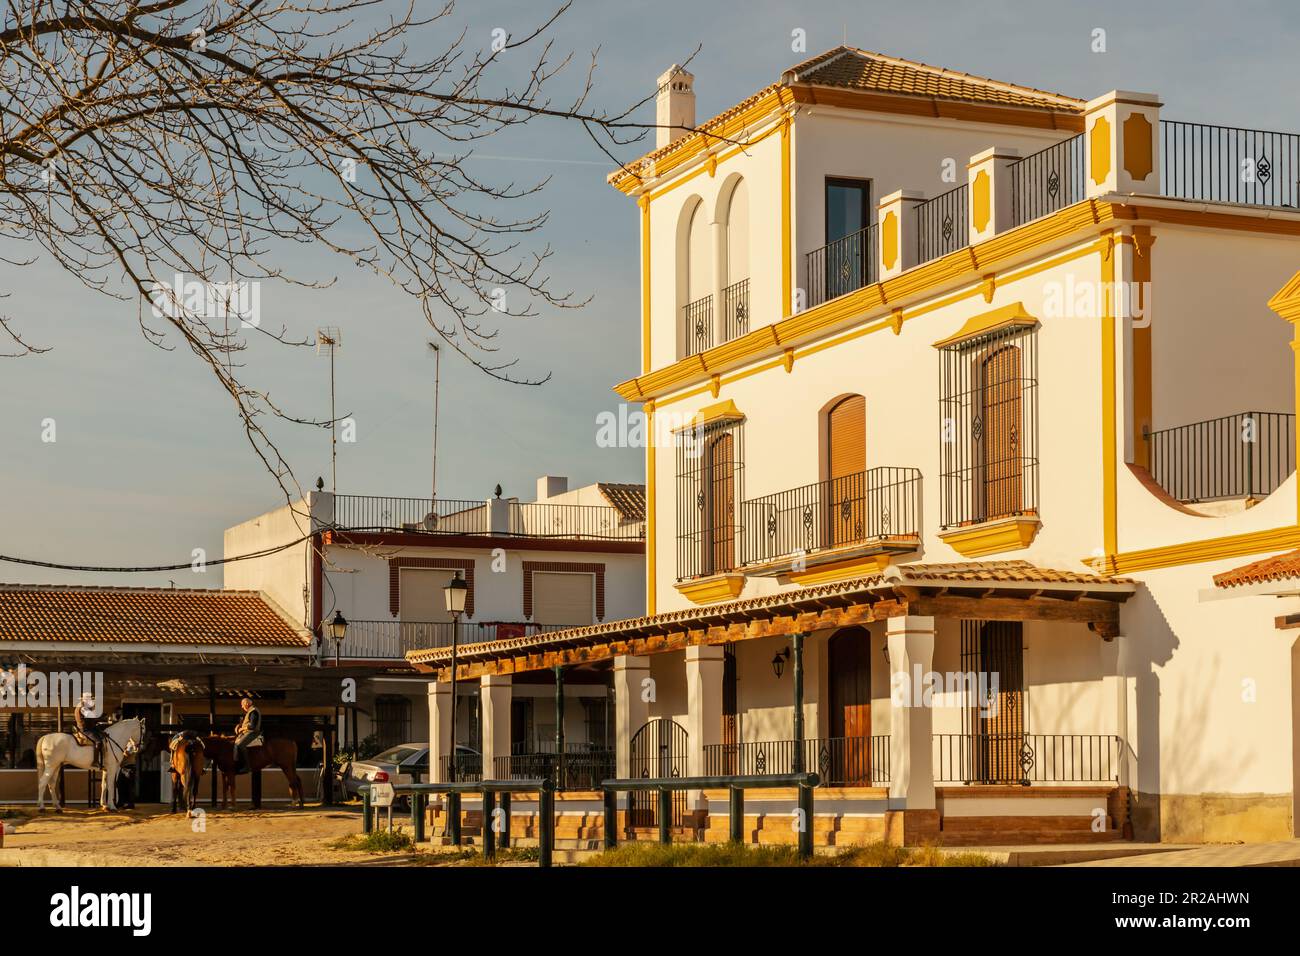 Vista de la arquitectura típica y las calles de arena en el pueblo de El Rocío Foto de stock